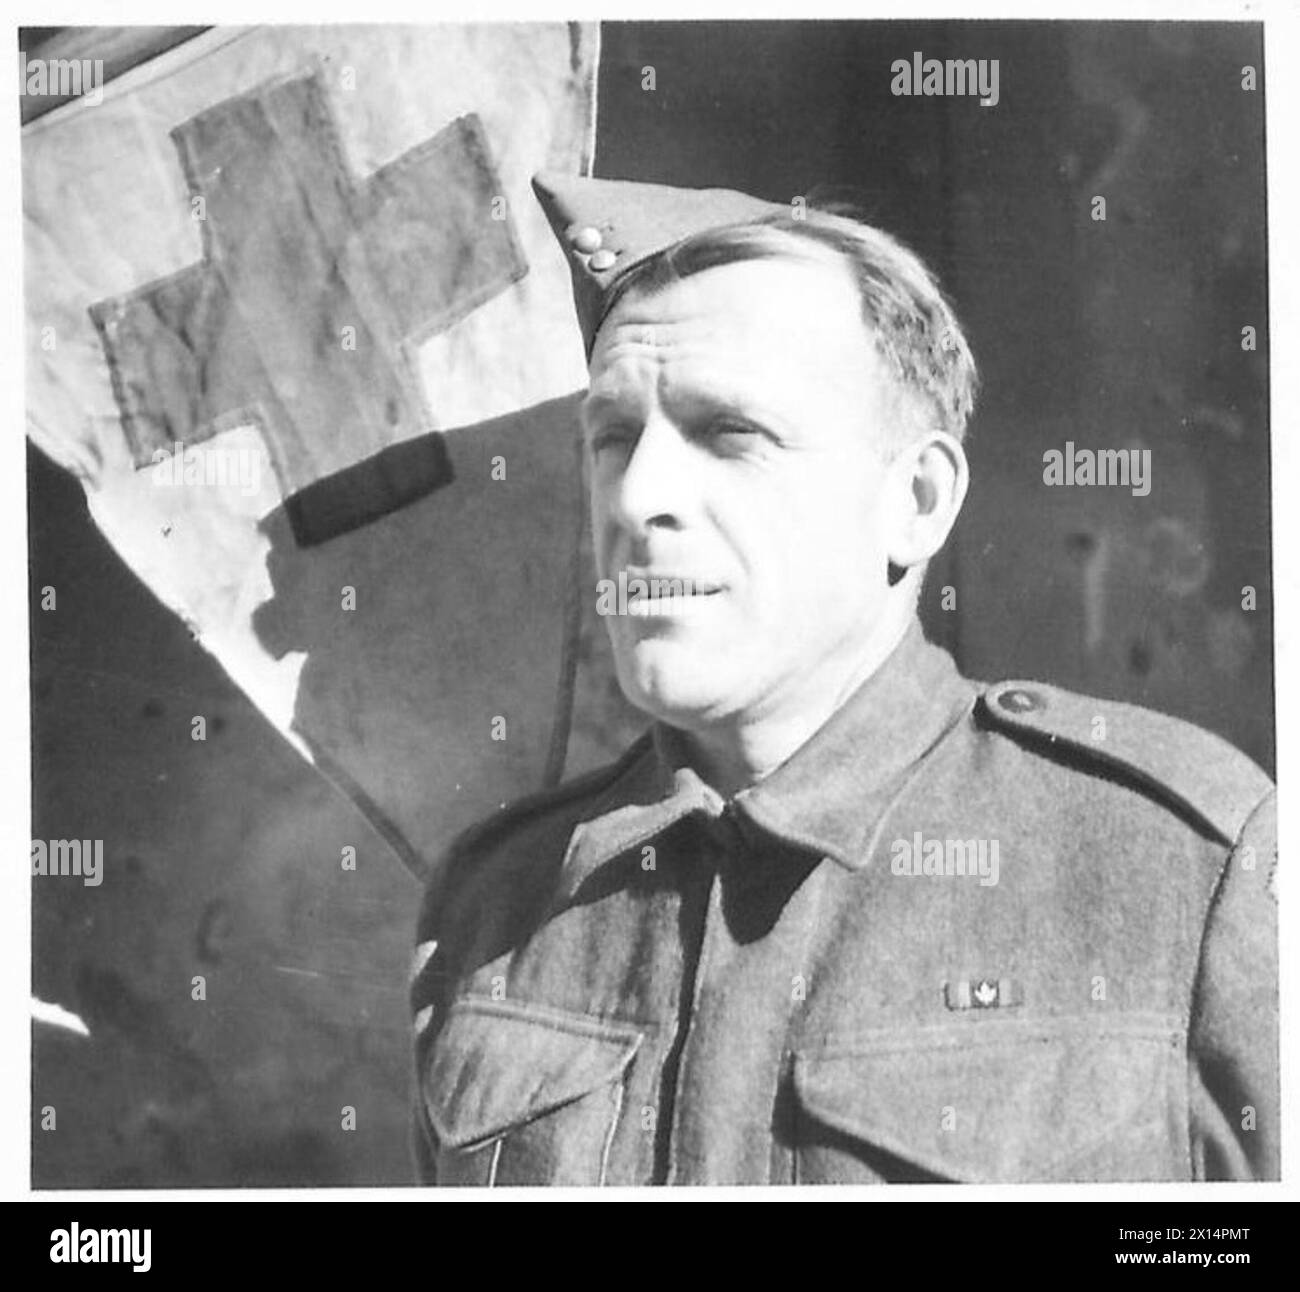 ITALIA: OTTAVA ARMYTHESE SONO I CANADESI - medico ordinario : Pte. C.L. Donaghy del 4041 Oxford Avenye, Montreal, R.C.A.M.C British Army Foto Stock